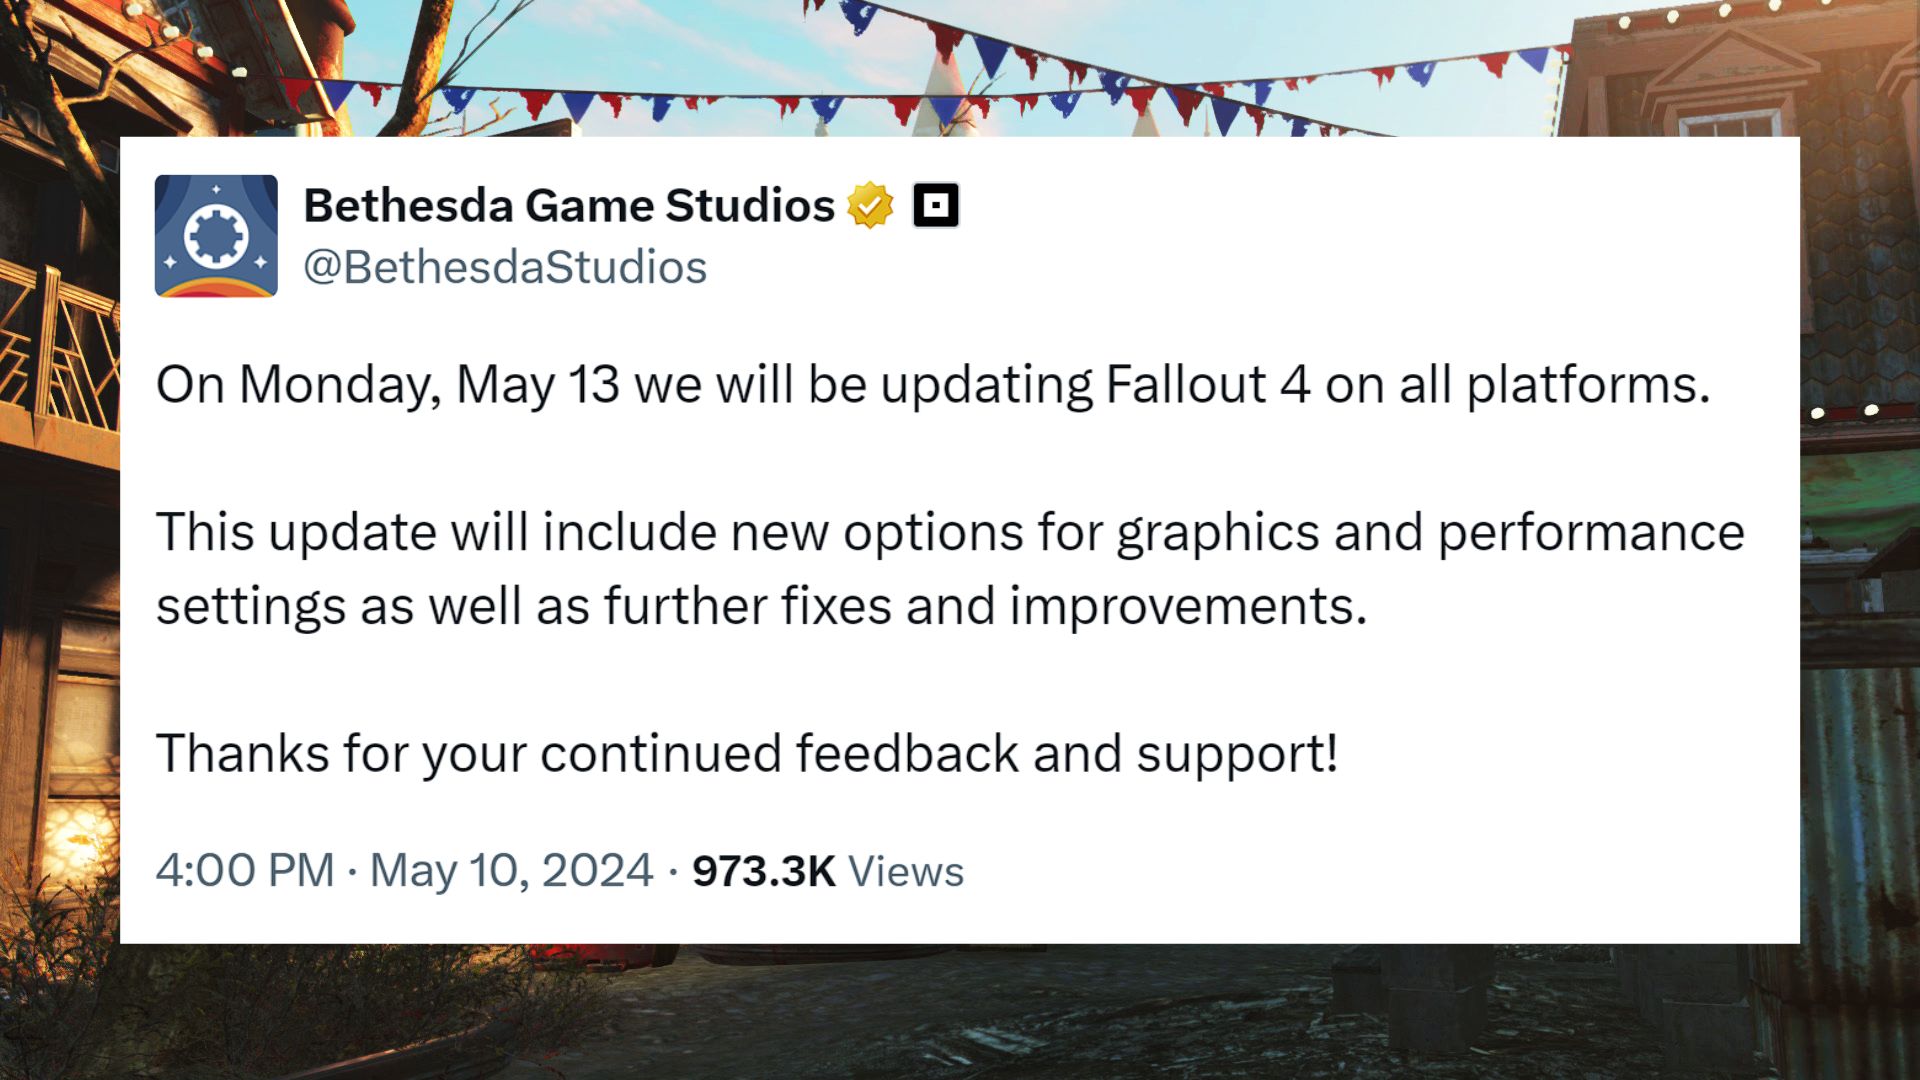 Fallout 4 next gen fix: a tweet from Bethesda promising a Fallout 4 next gen fix